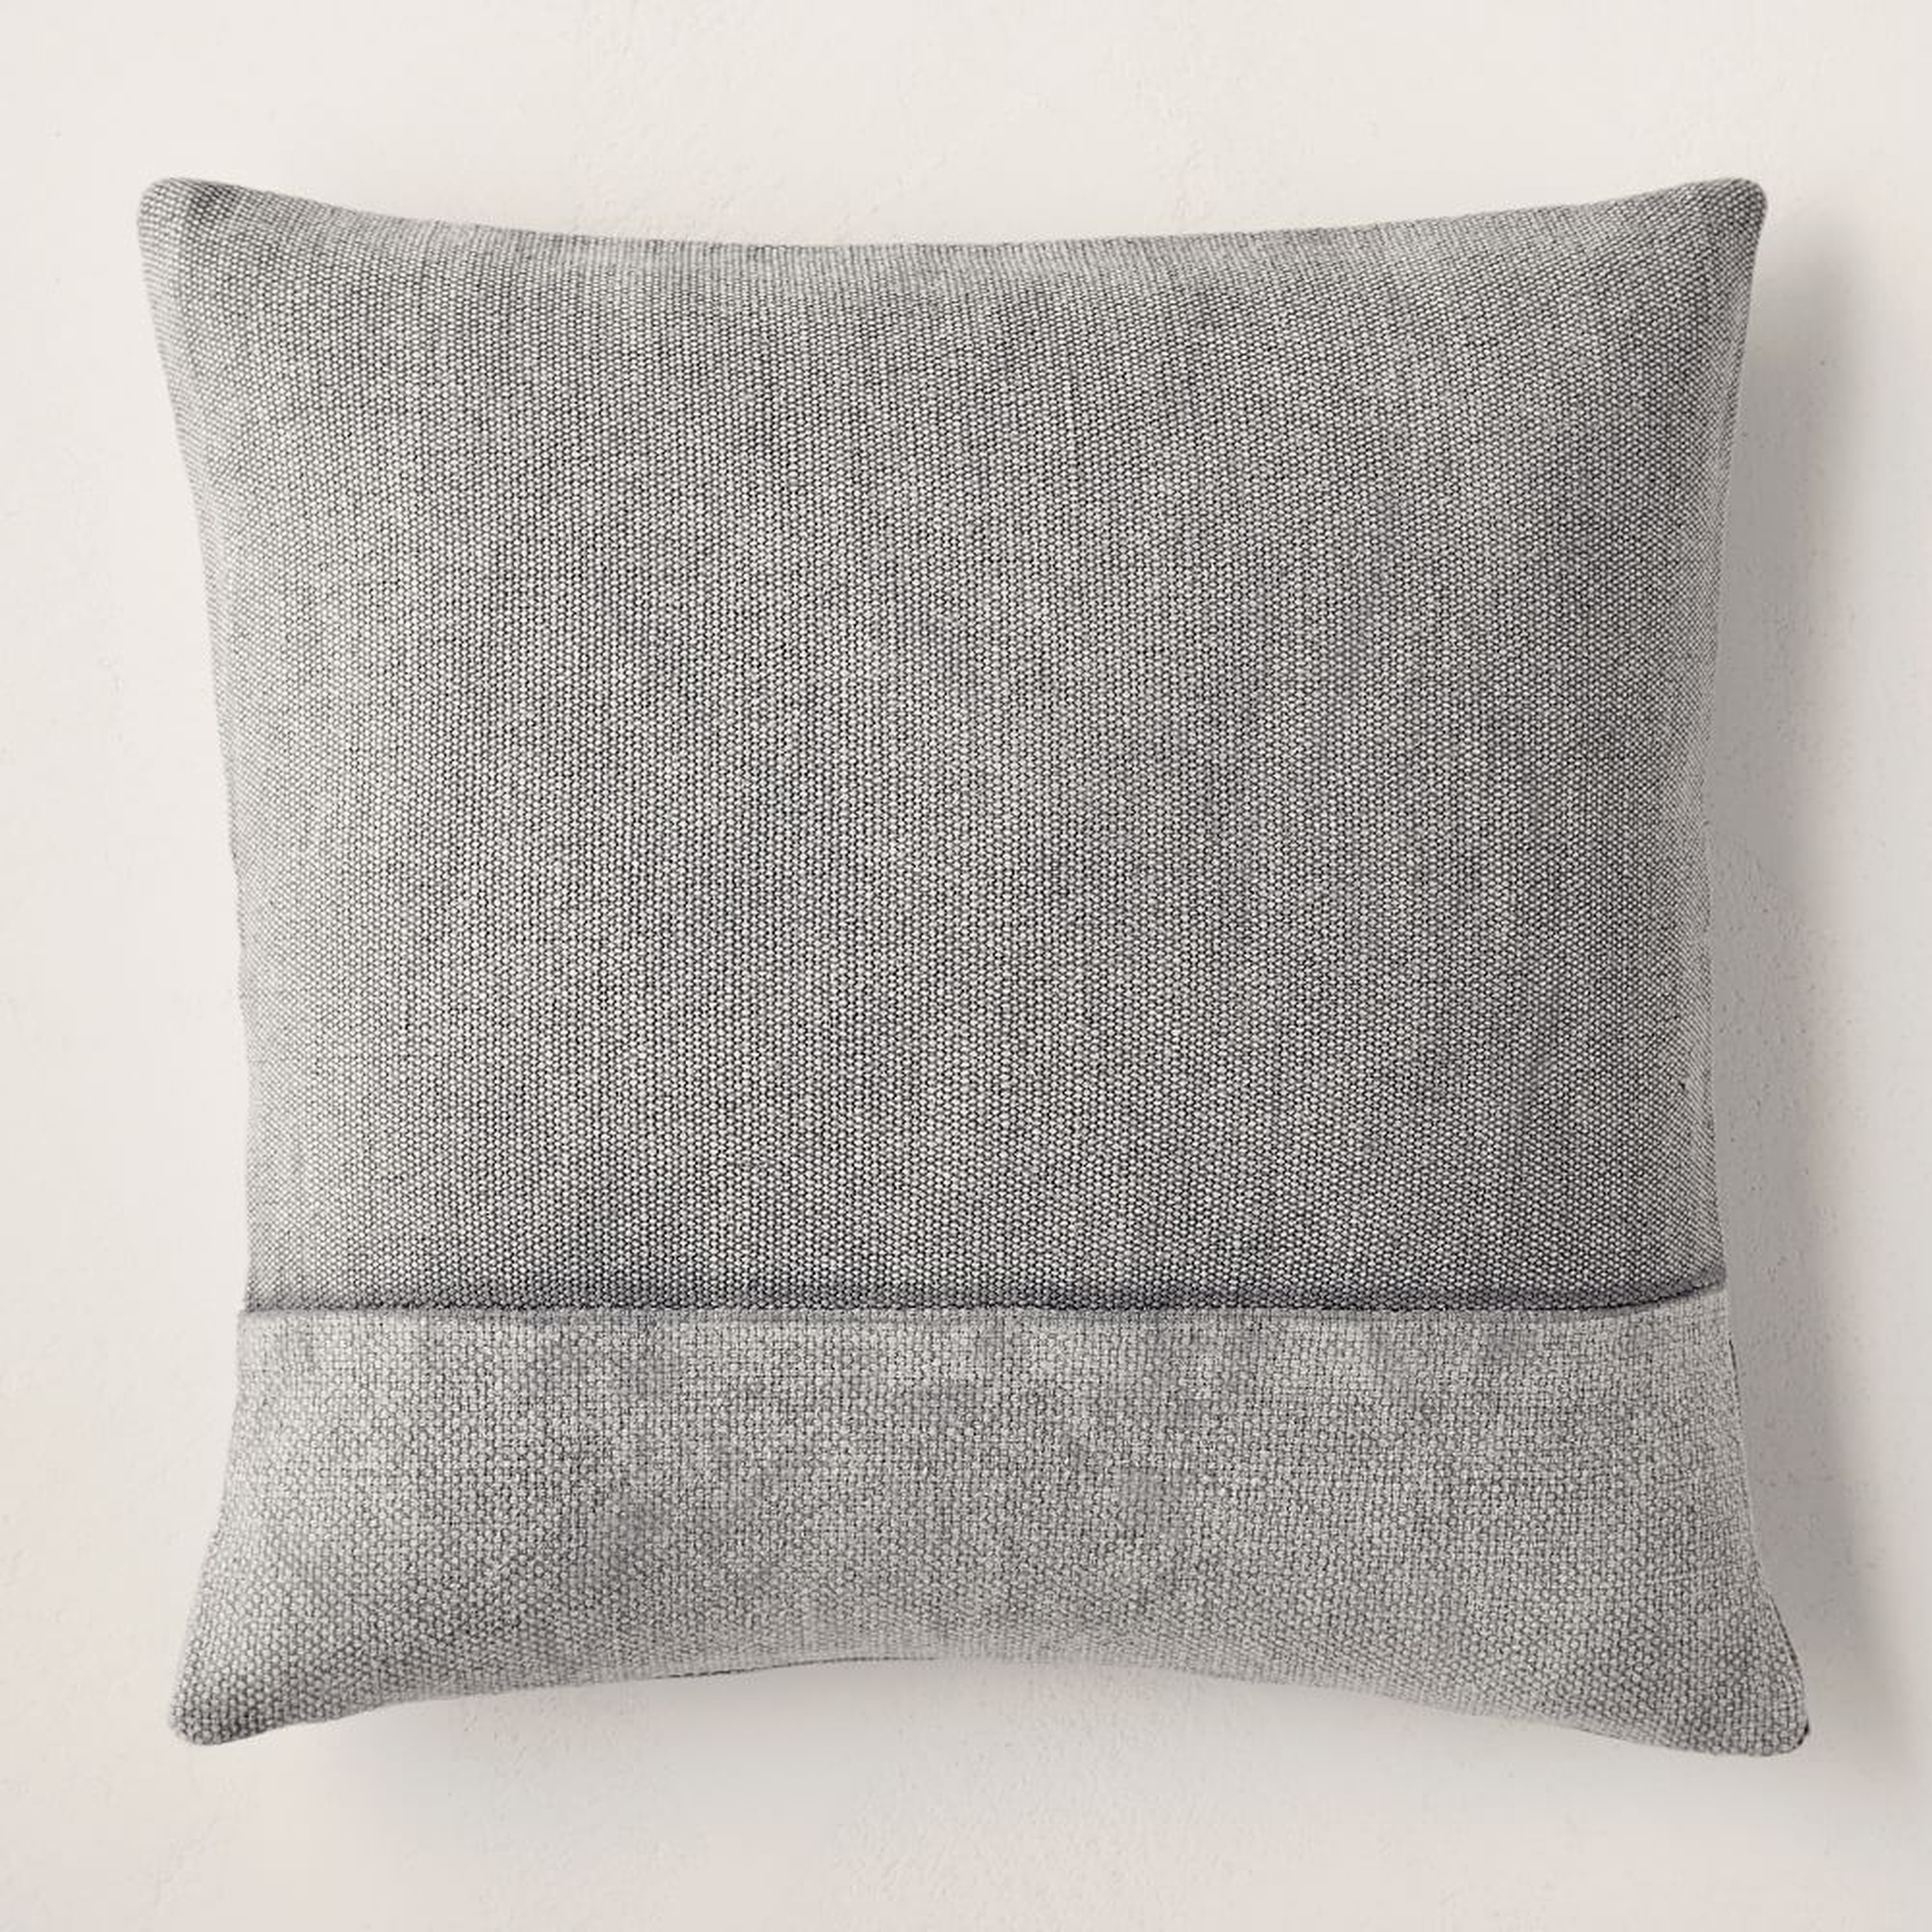 Cotton Canvas Pillow Cover, 18"x18", Iron - West Elm